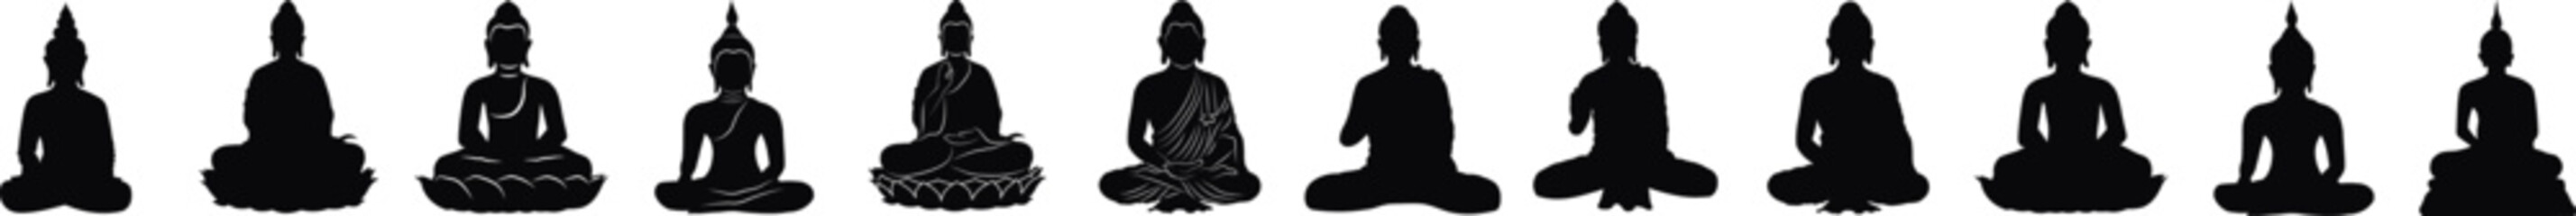 Lord Gautama Buddha illustration for Happy Buddha Purnima, Vesak Day Social Media Post , Web Banner